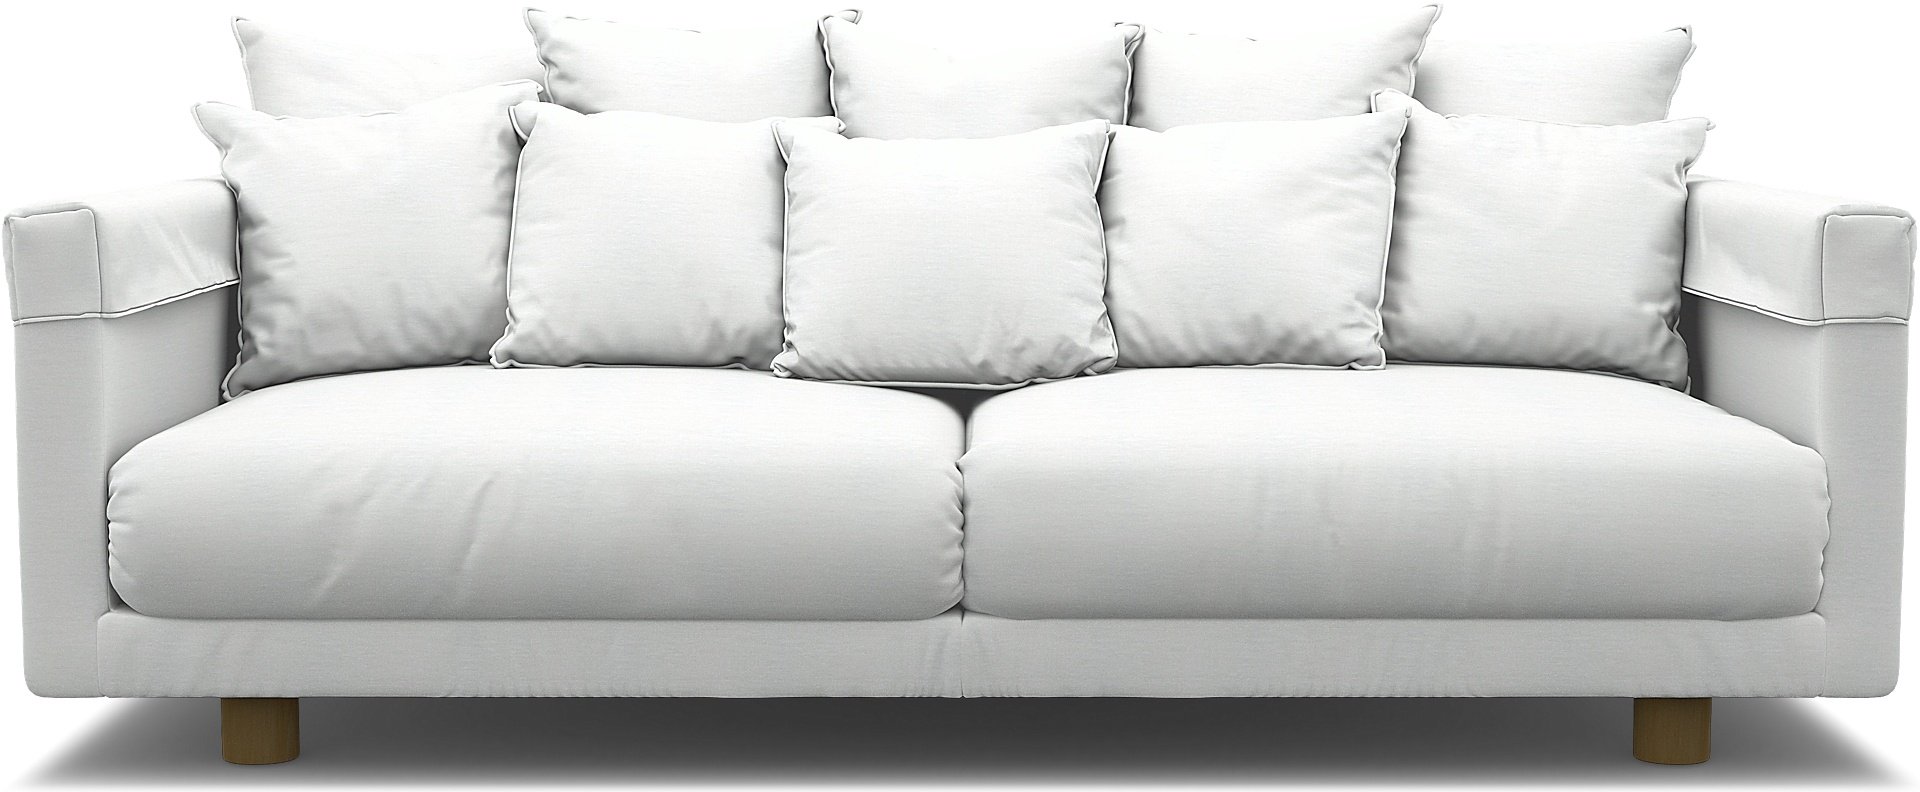 IKEA - Stockholm 2017 3 Seater Sofa Cover, White, Linen - Bemz